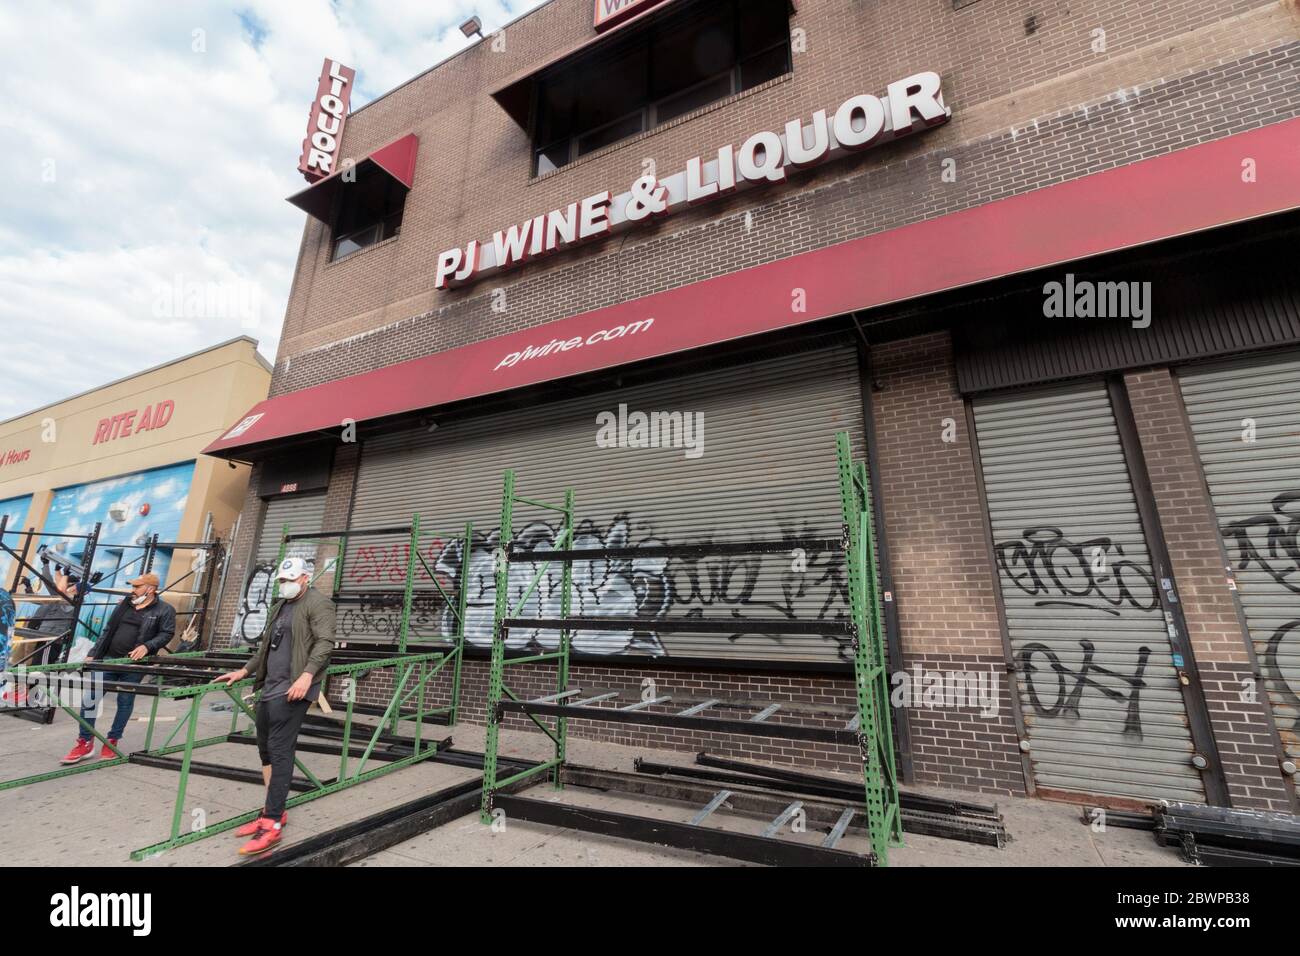 Inwood, NYC - des ouvriers en face de PJ Wine and Liquor Store dans construire une barricade pour protéger contre les pillages possibles lors de la fermeture tôt pour le couvre-feu Banque D'Images